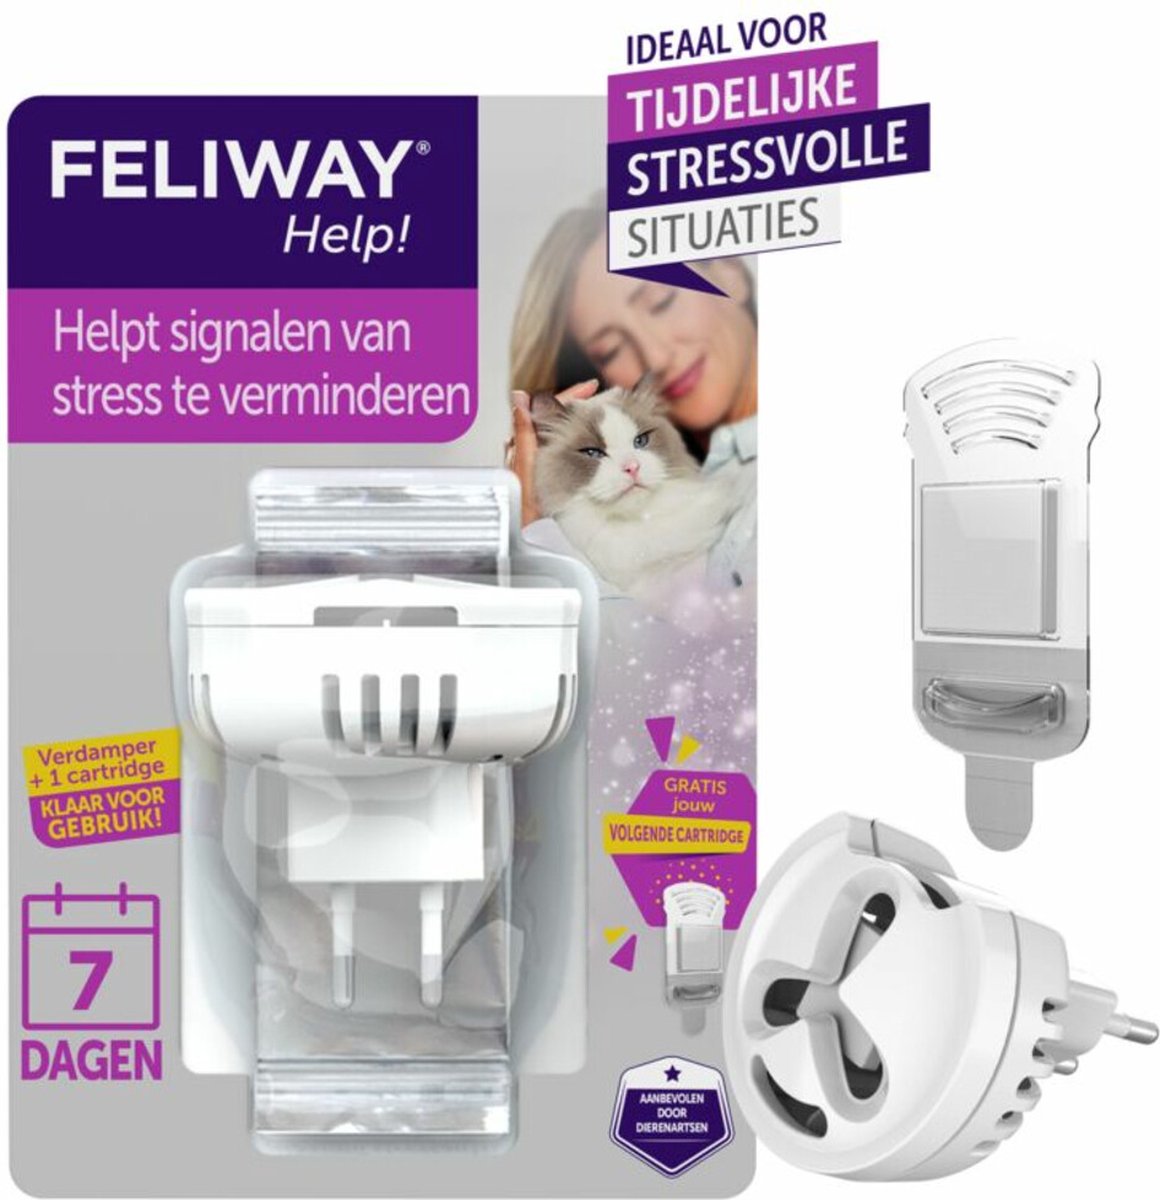 Feliway Help! - Verdamper + Cartridge - 7 dagen - Kat - Tijdelijke spannende situaties voor je kat - Feliway